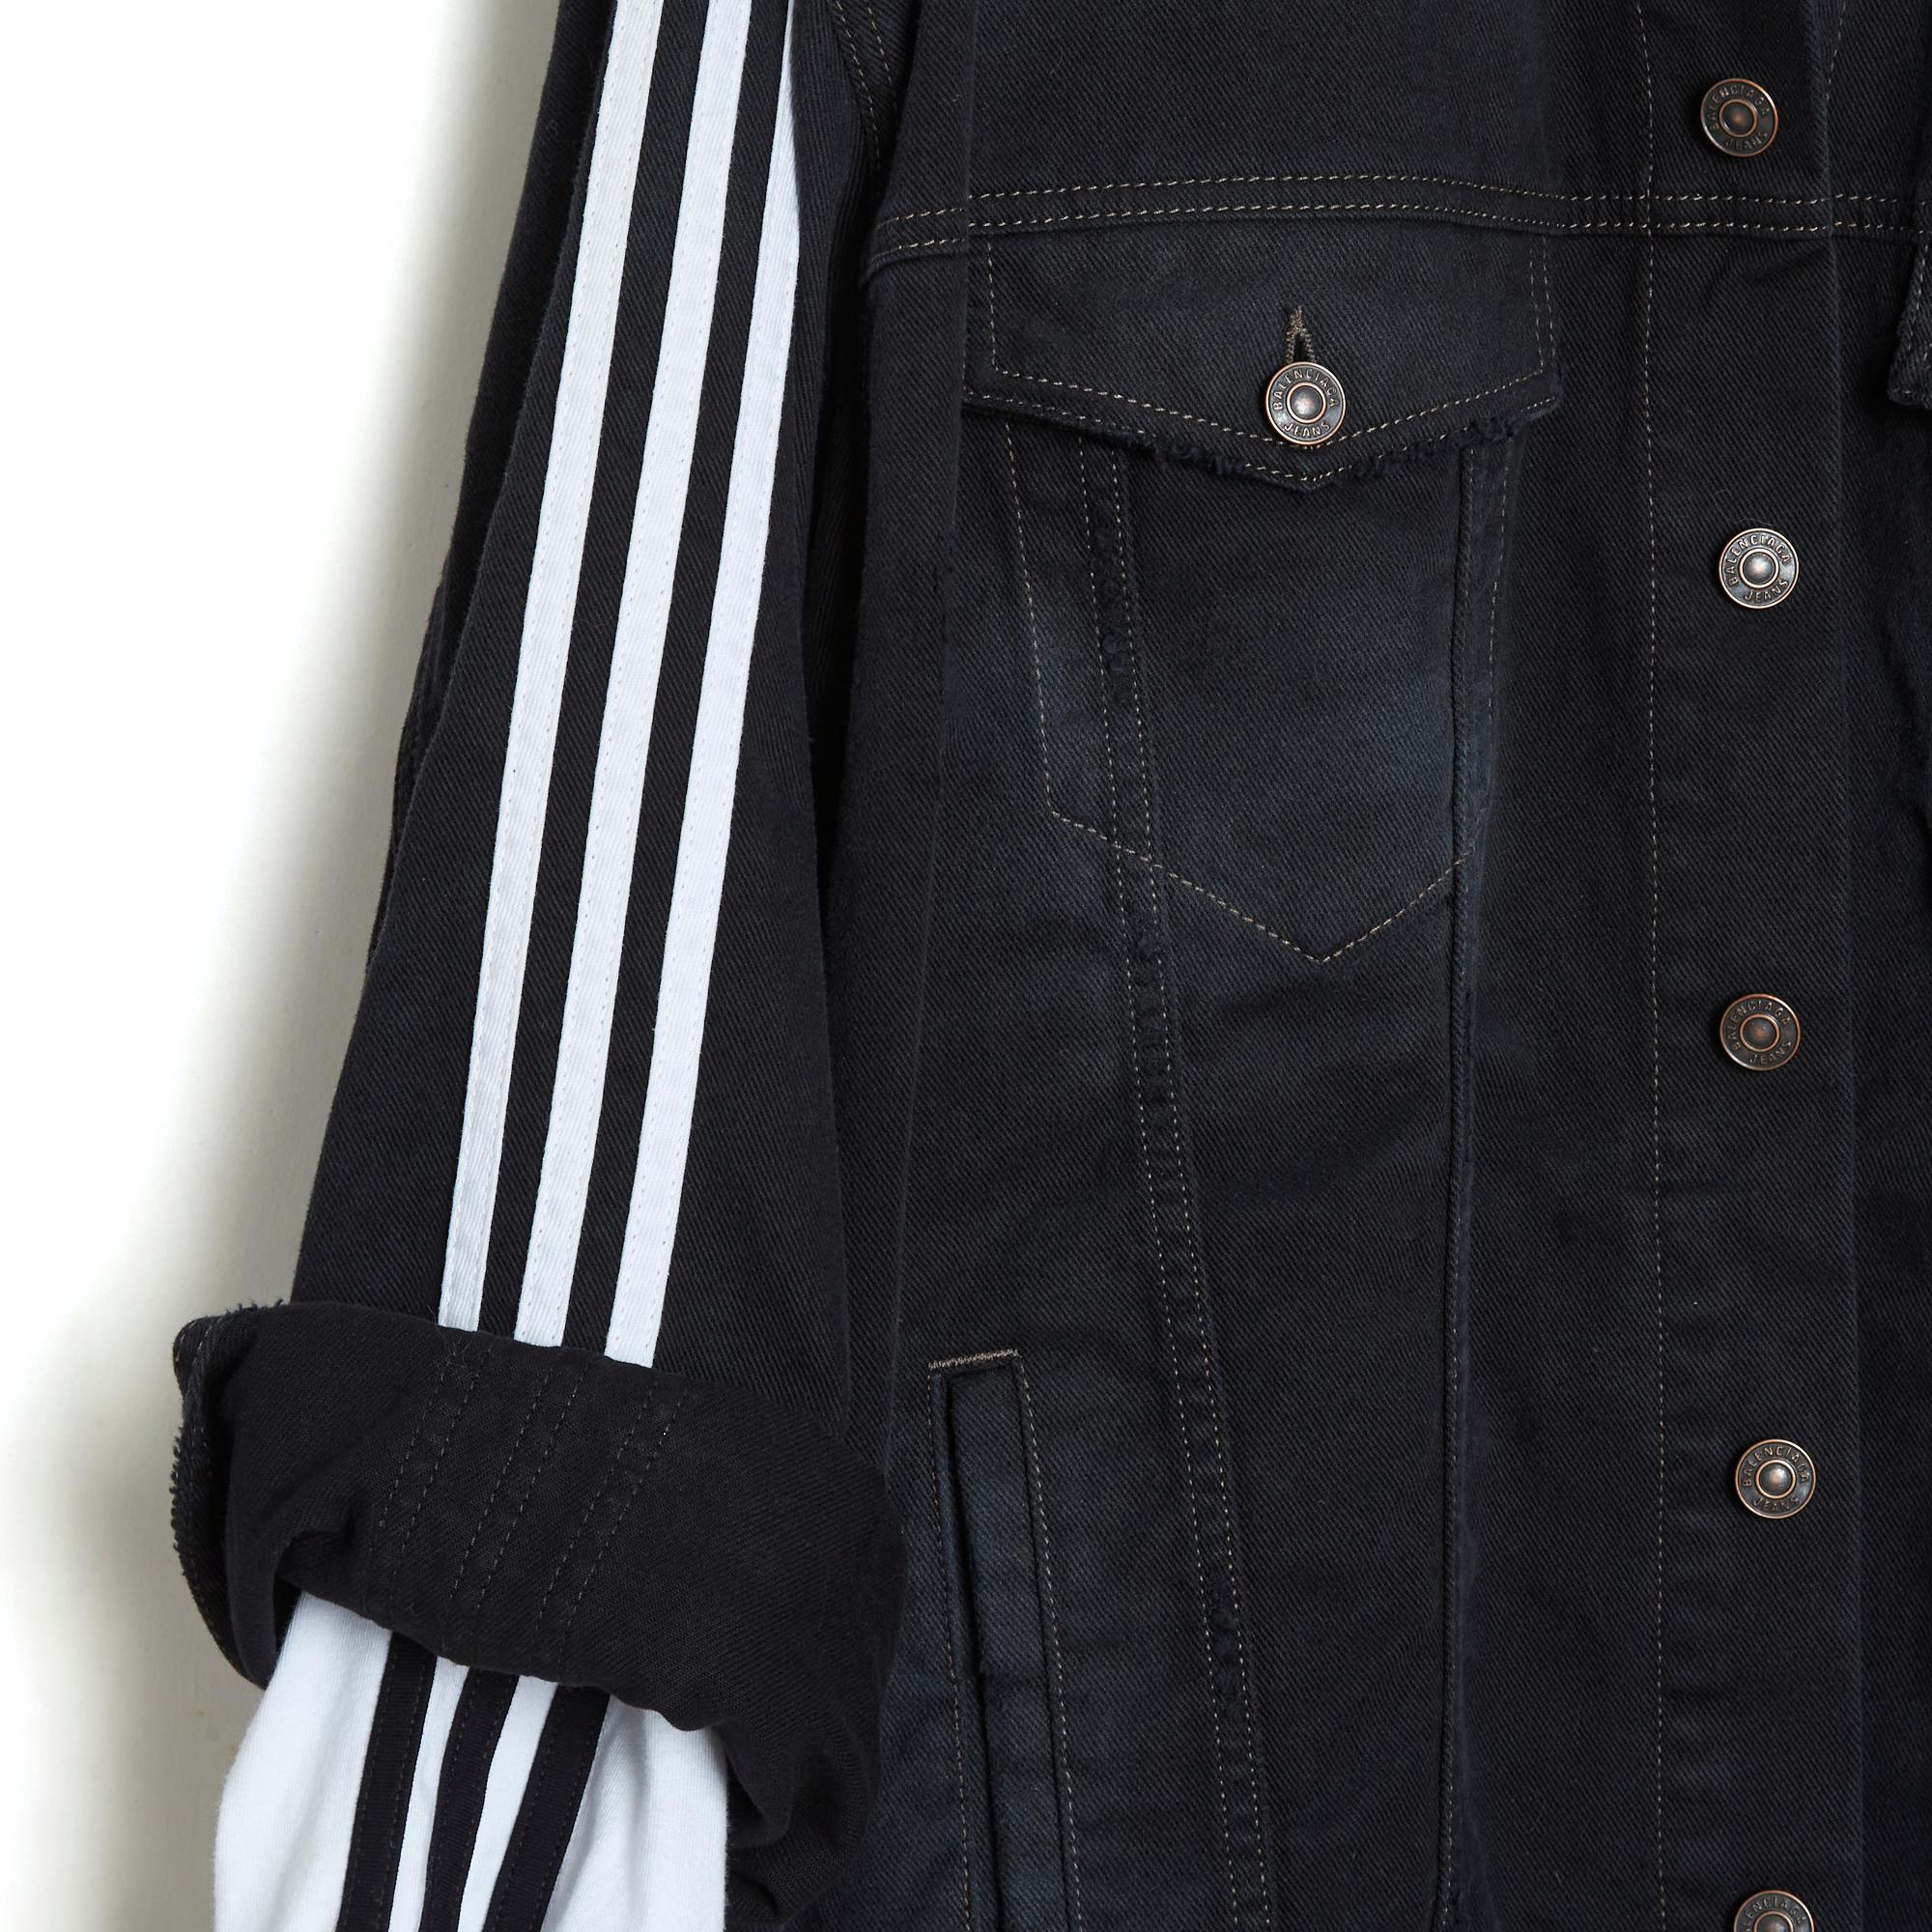 Ensemble Balenciaga issu de la collection 2023 en collaboration avec Adidas composé d'une veste oversize en denim noir et d'un t-shirt assorti en jersey blanc à manches longues, les deux pièces, légèrement usagées (bords effilochés sur le bas des